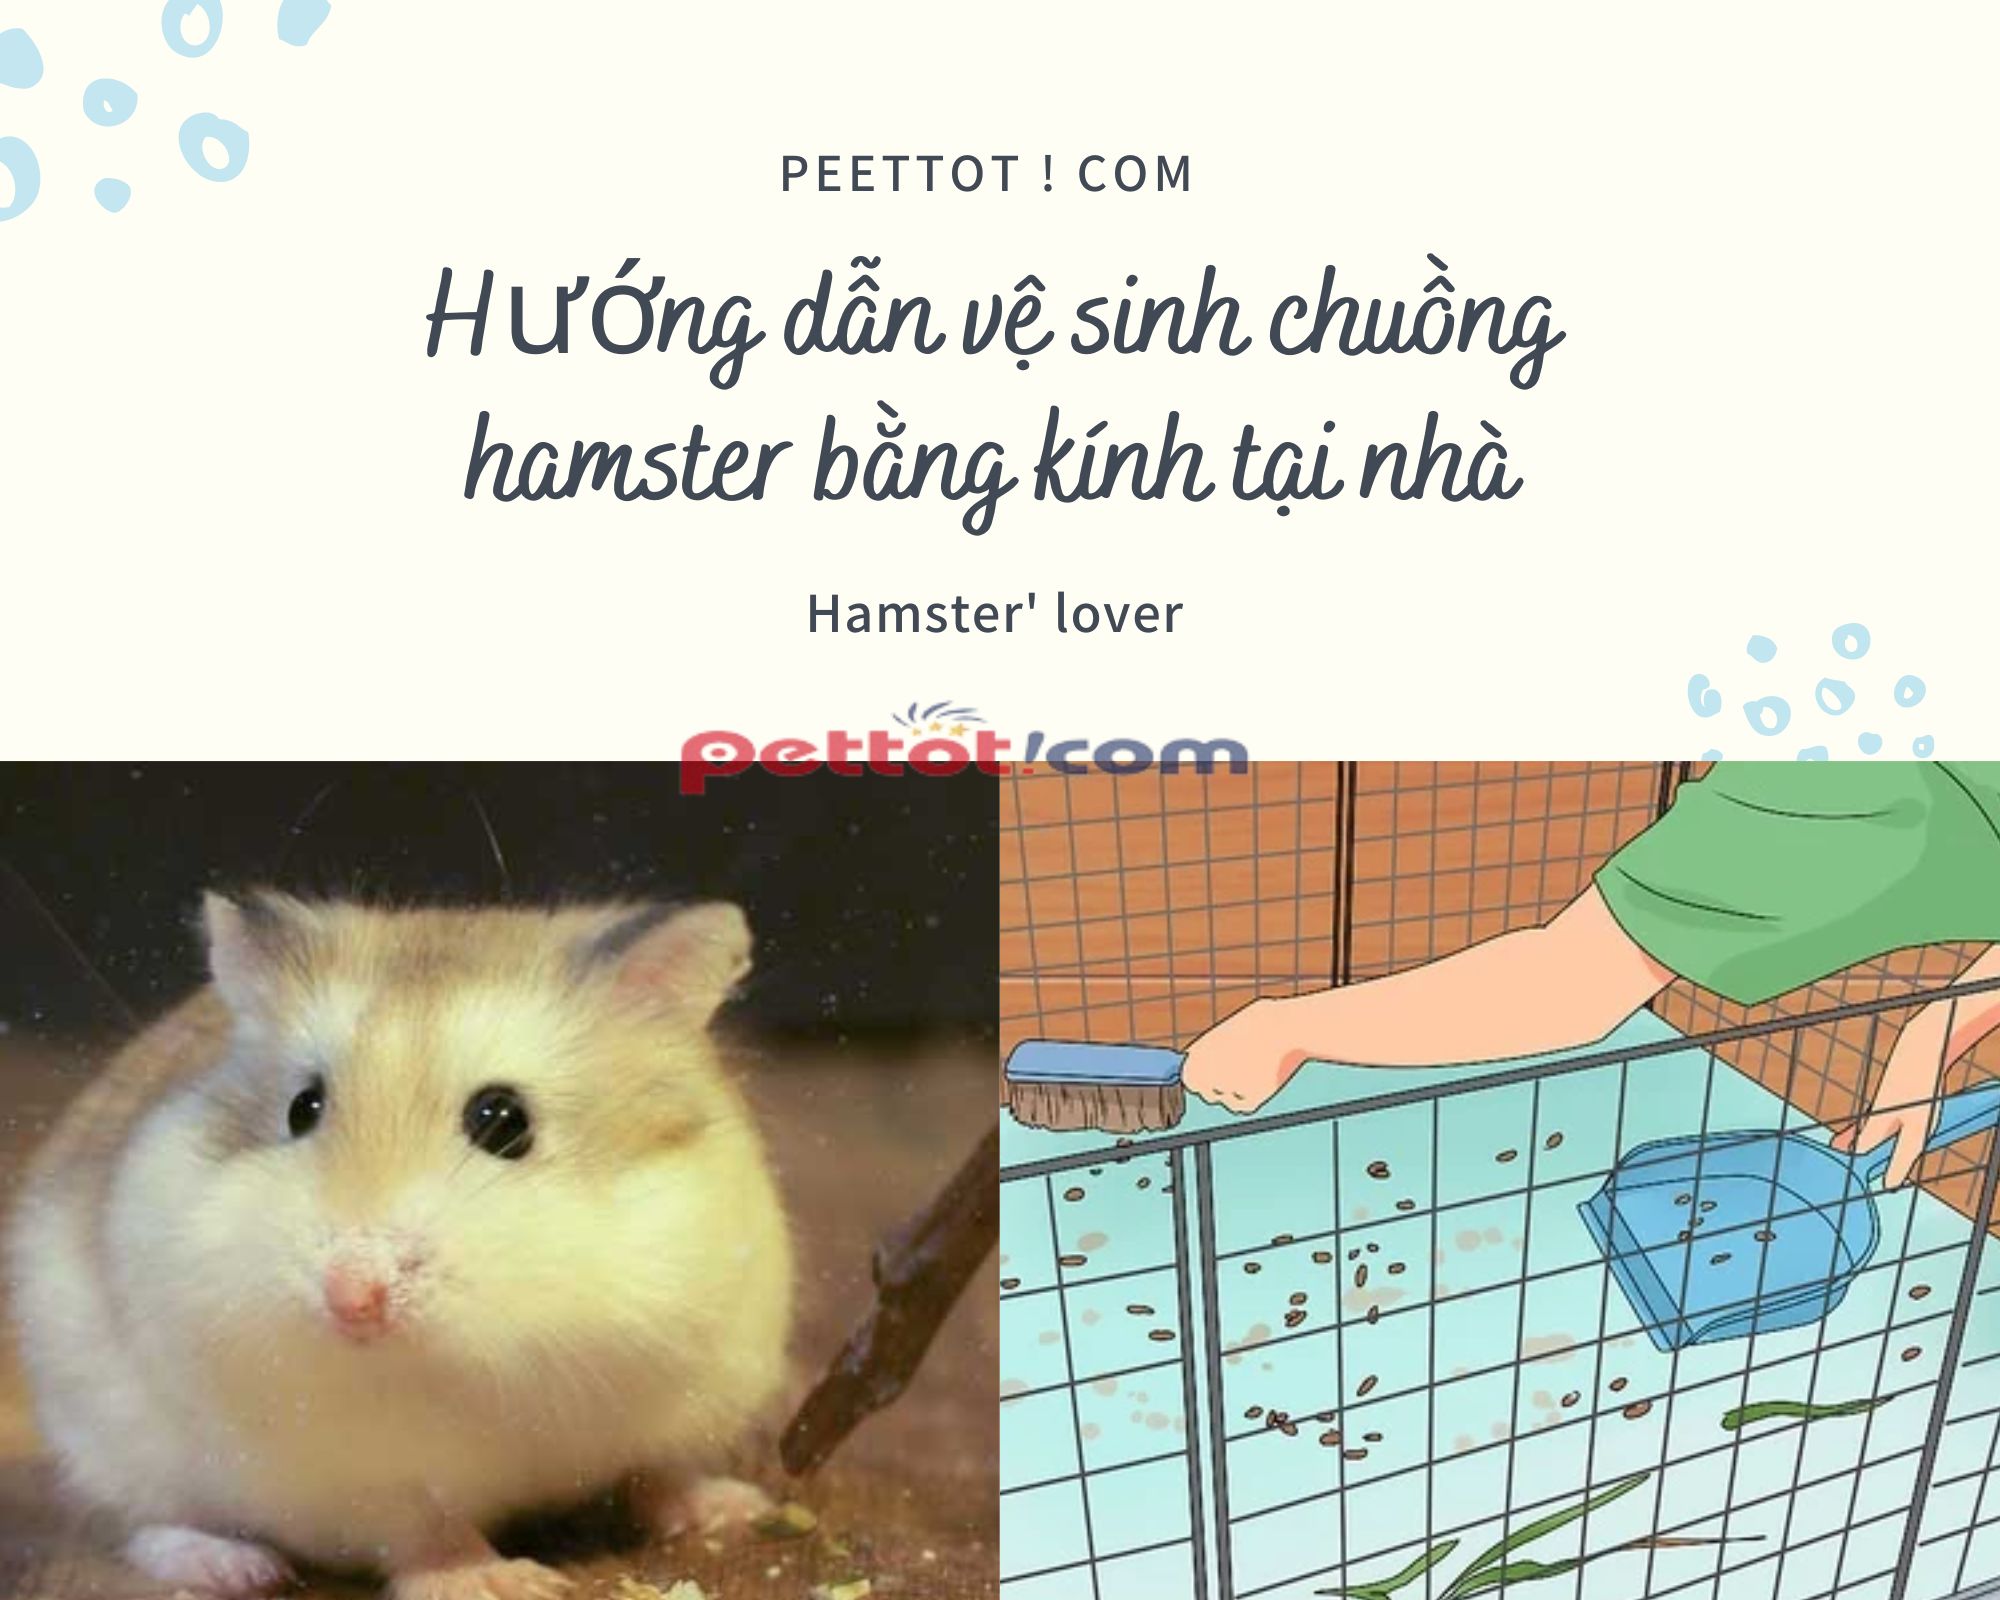 Chuồng hamster bằng kính Giá rẻ【Đầy đủ phụ kiện】